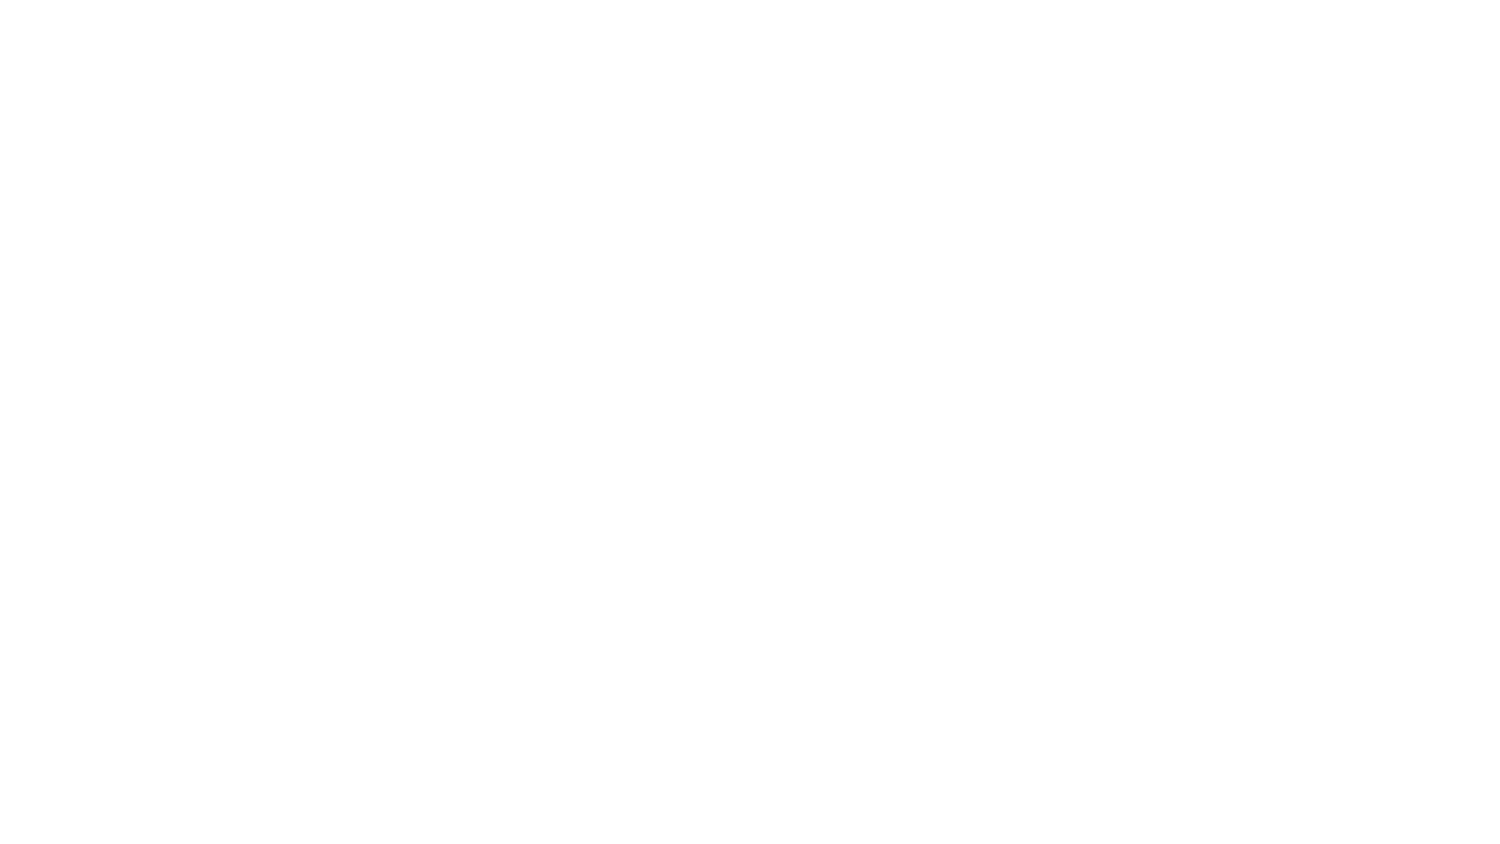 Black Entrepreneurs of the Flint Hills